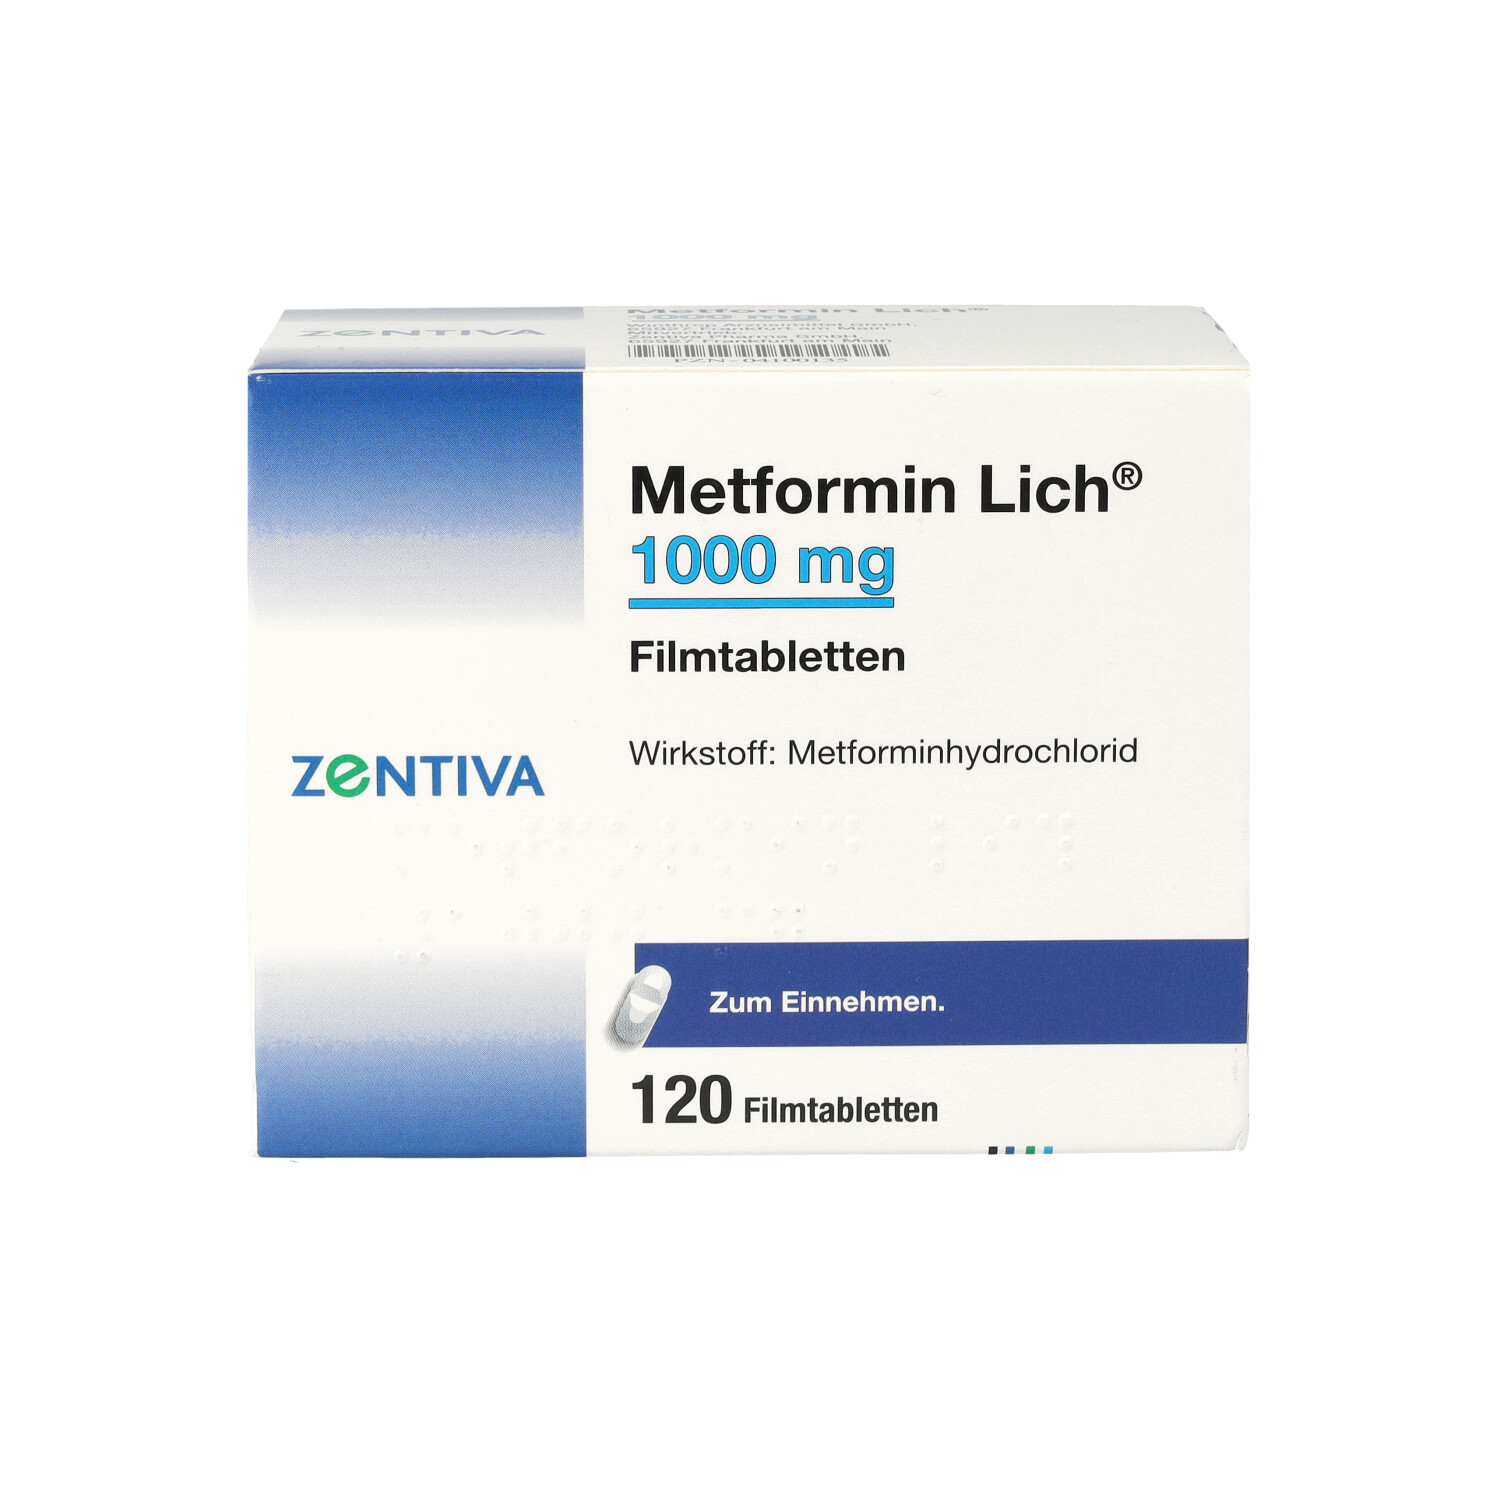 METFORMIN Lich 1.000 mg Filmtabletten